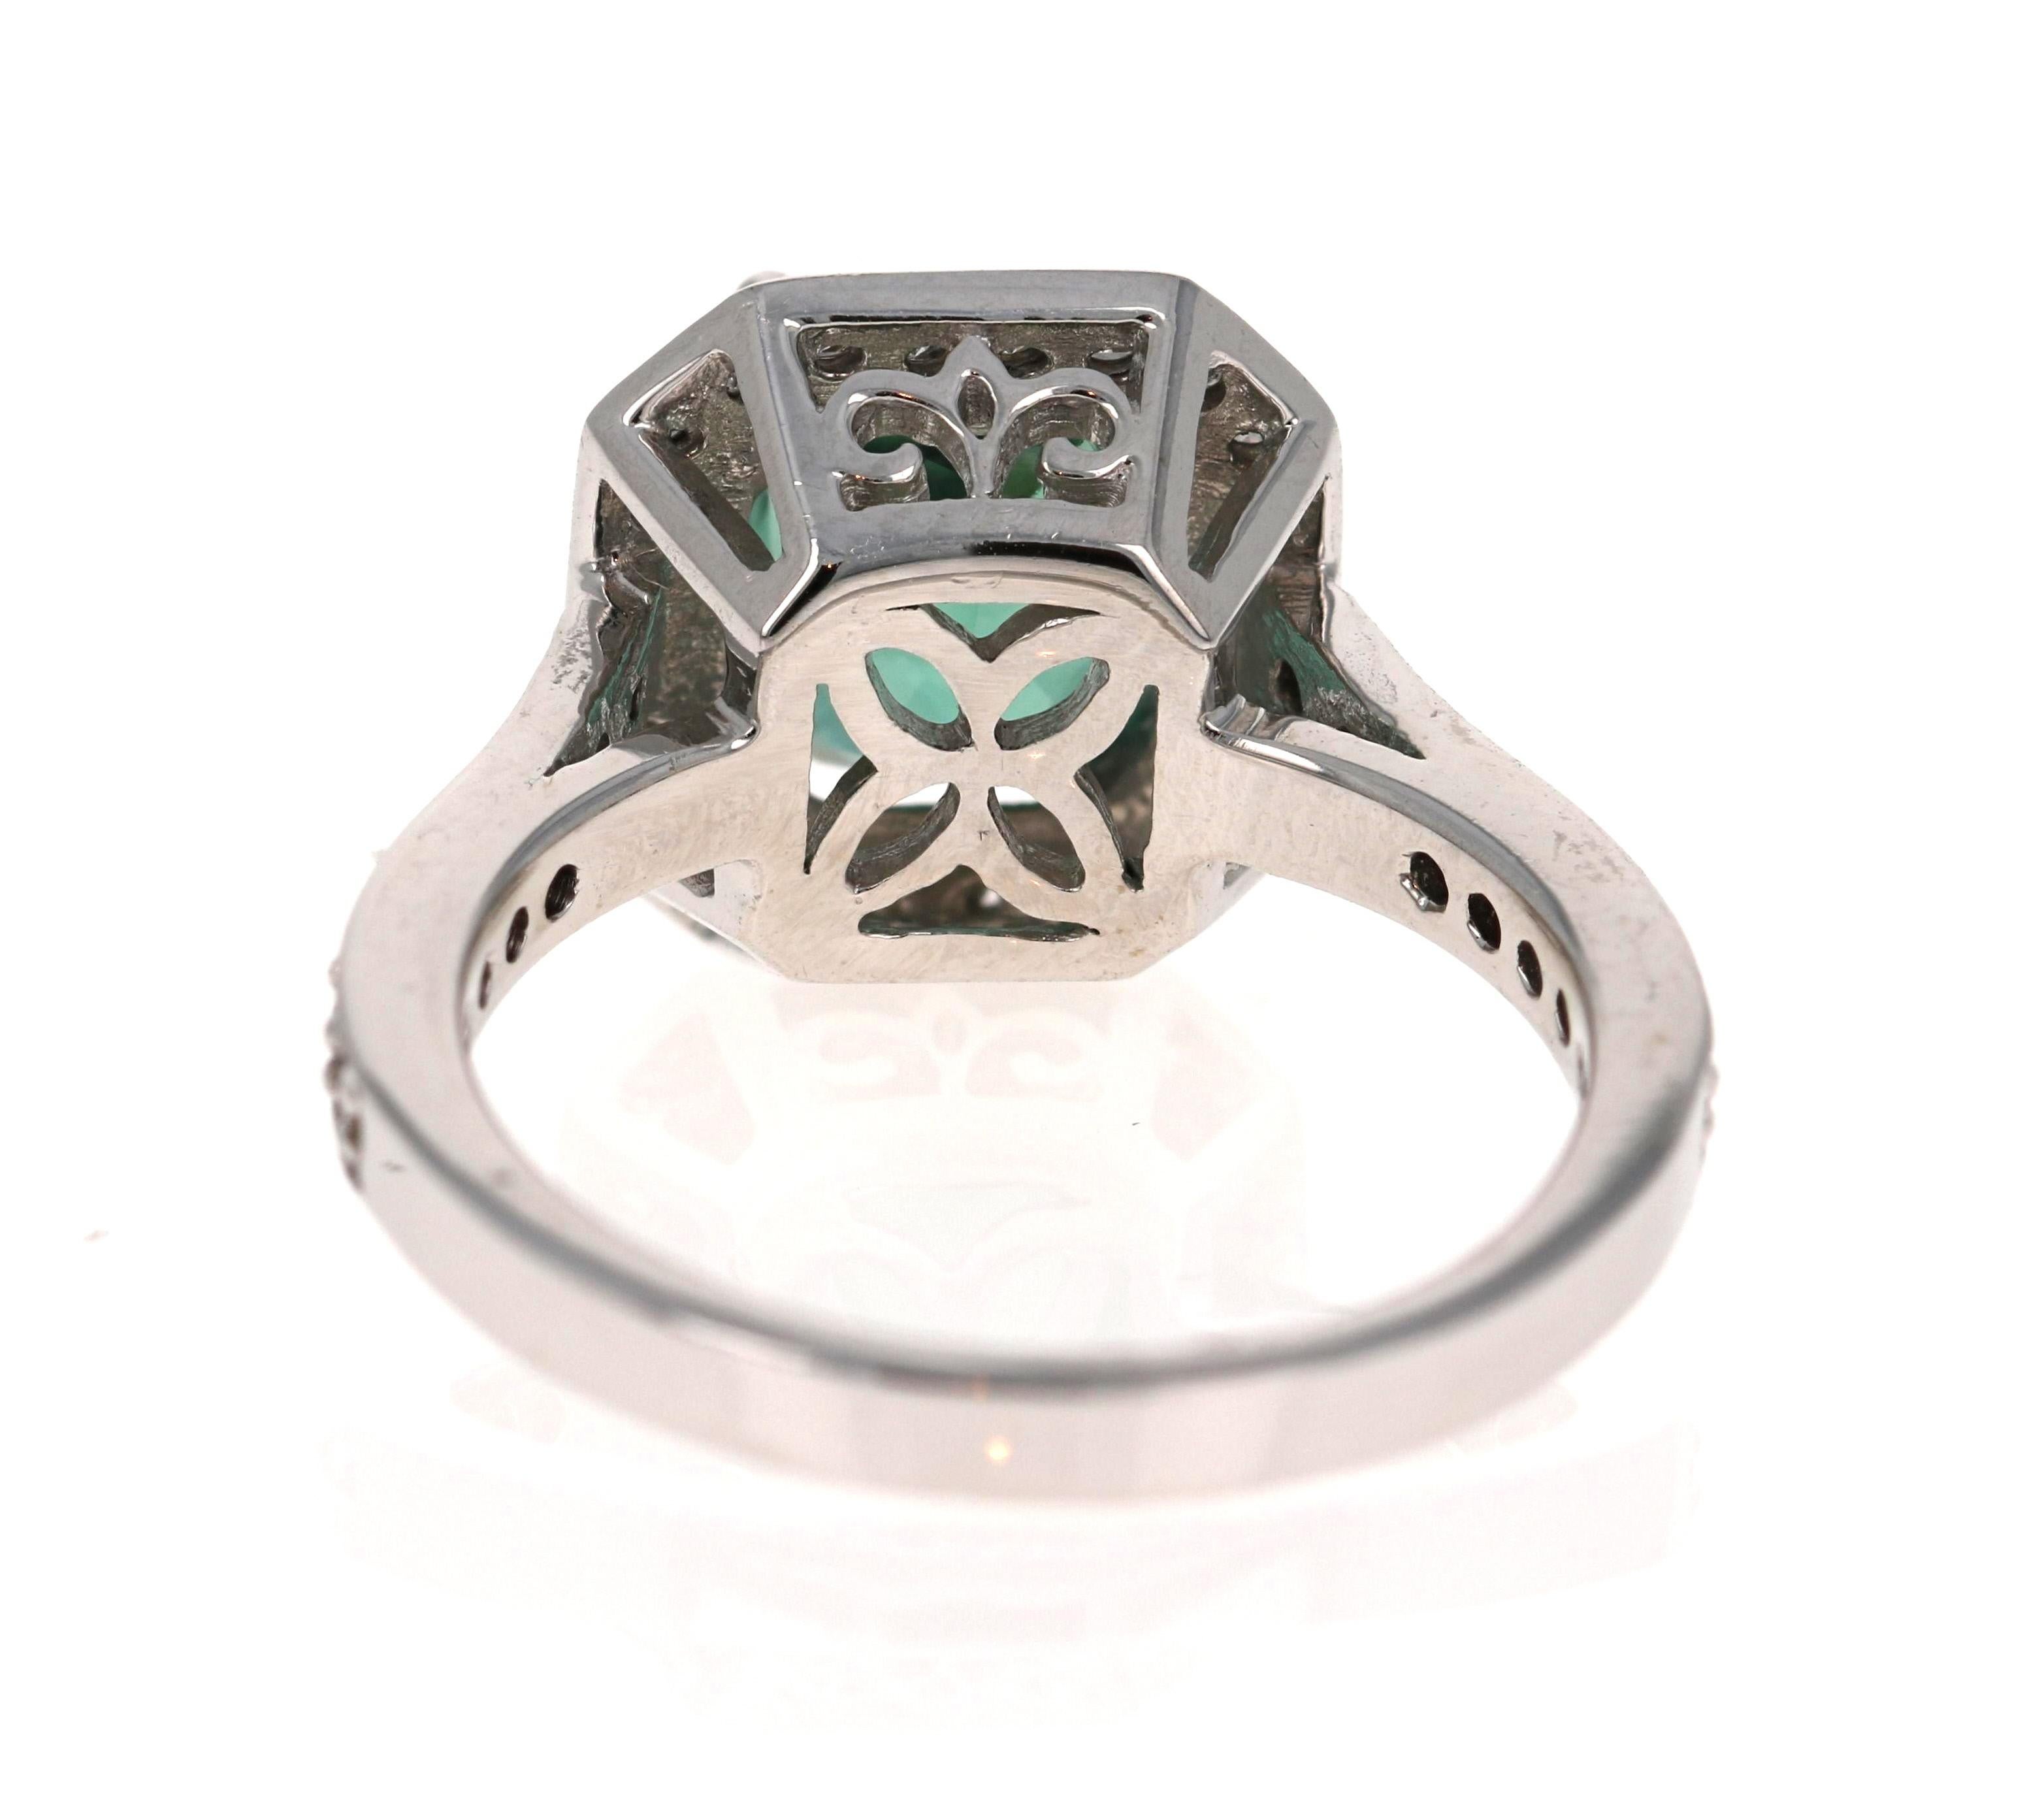 Cushion Cut 3.22 Carat Green Tourmaline Diamond 14 Karat White Gold Engagement Ring